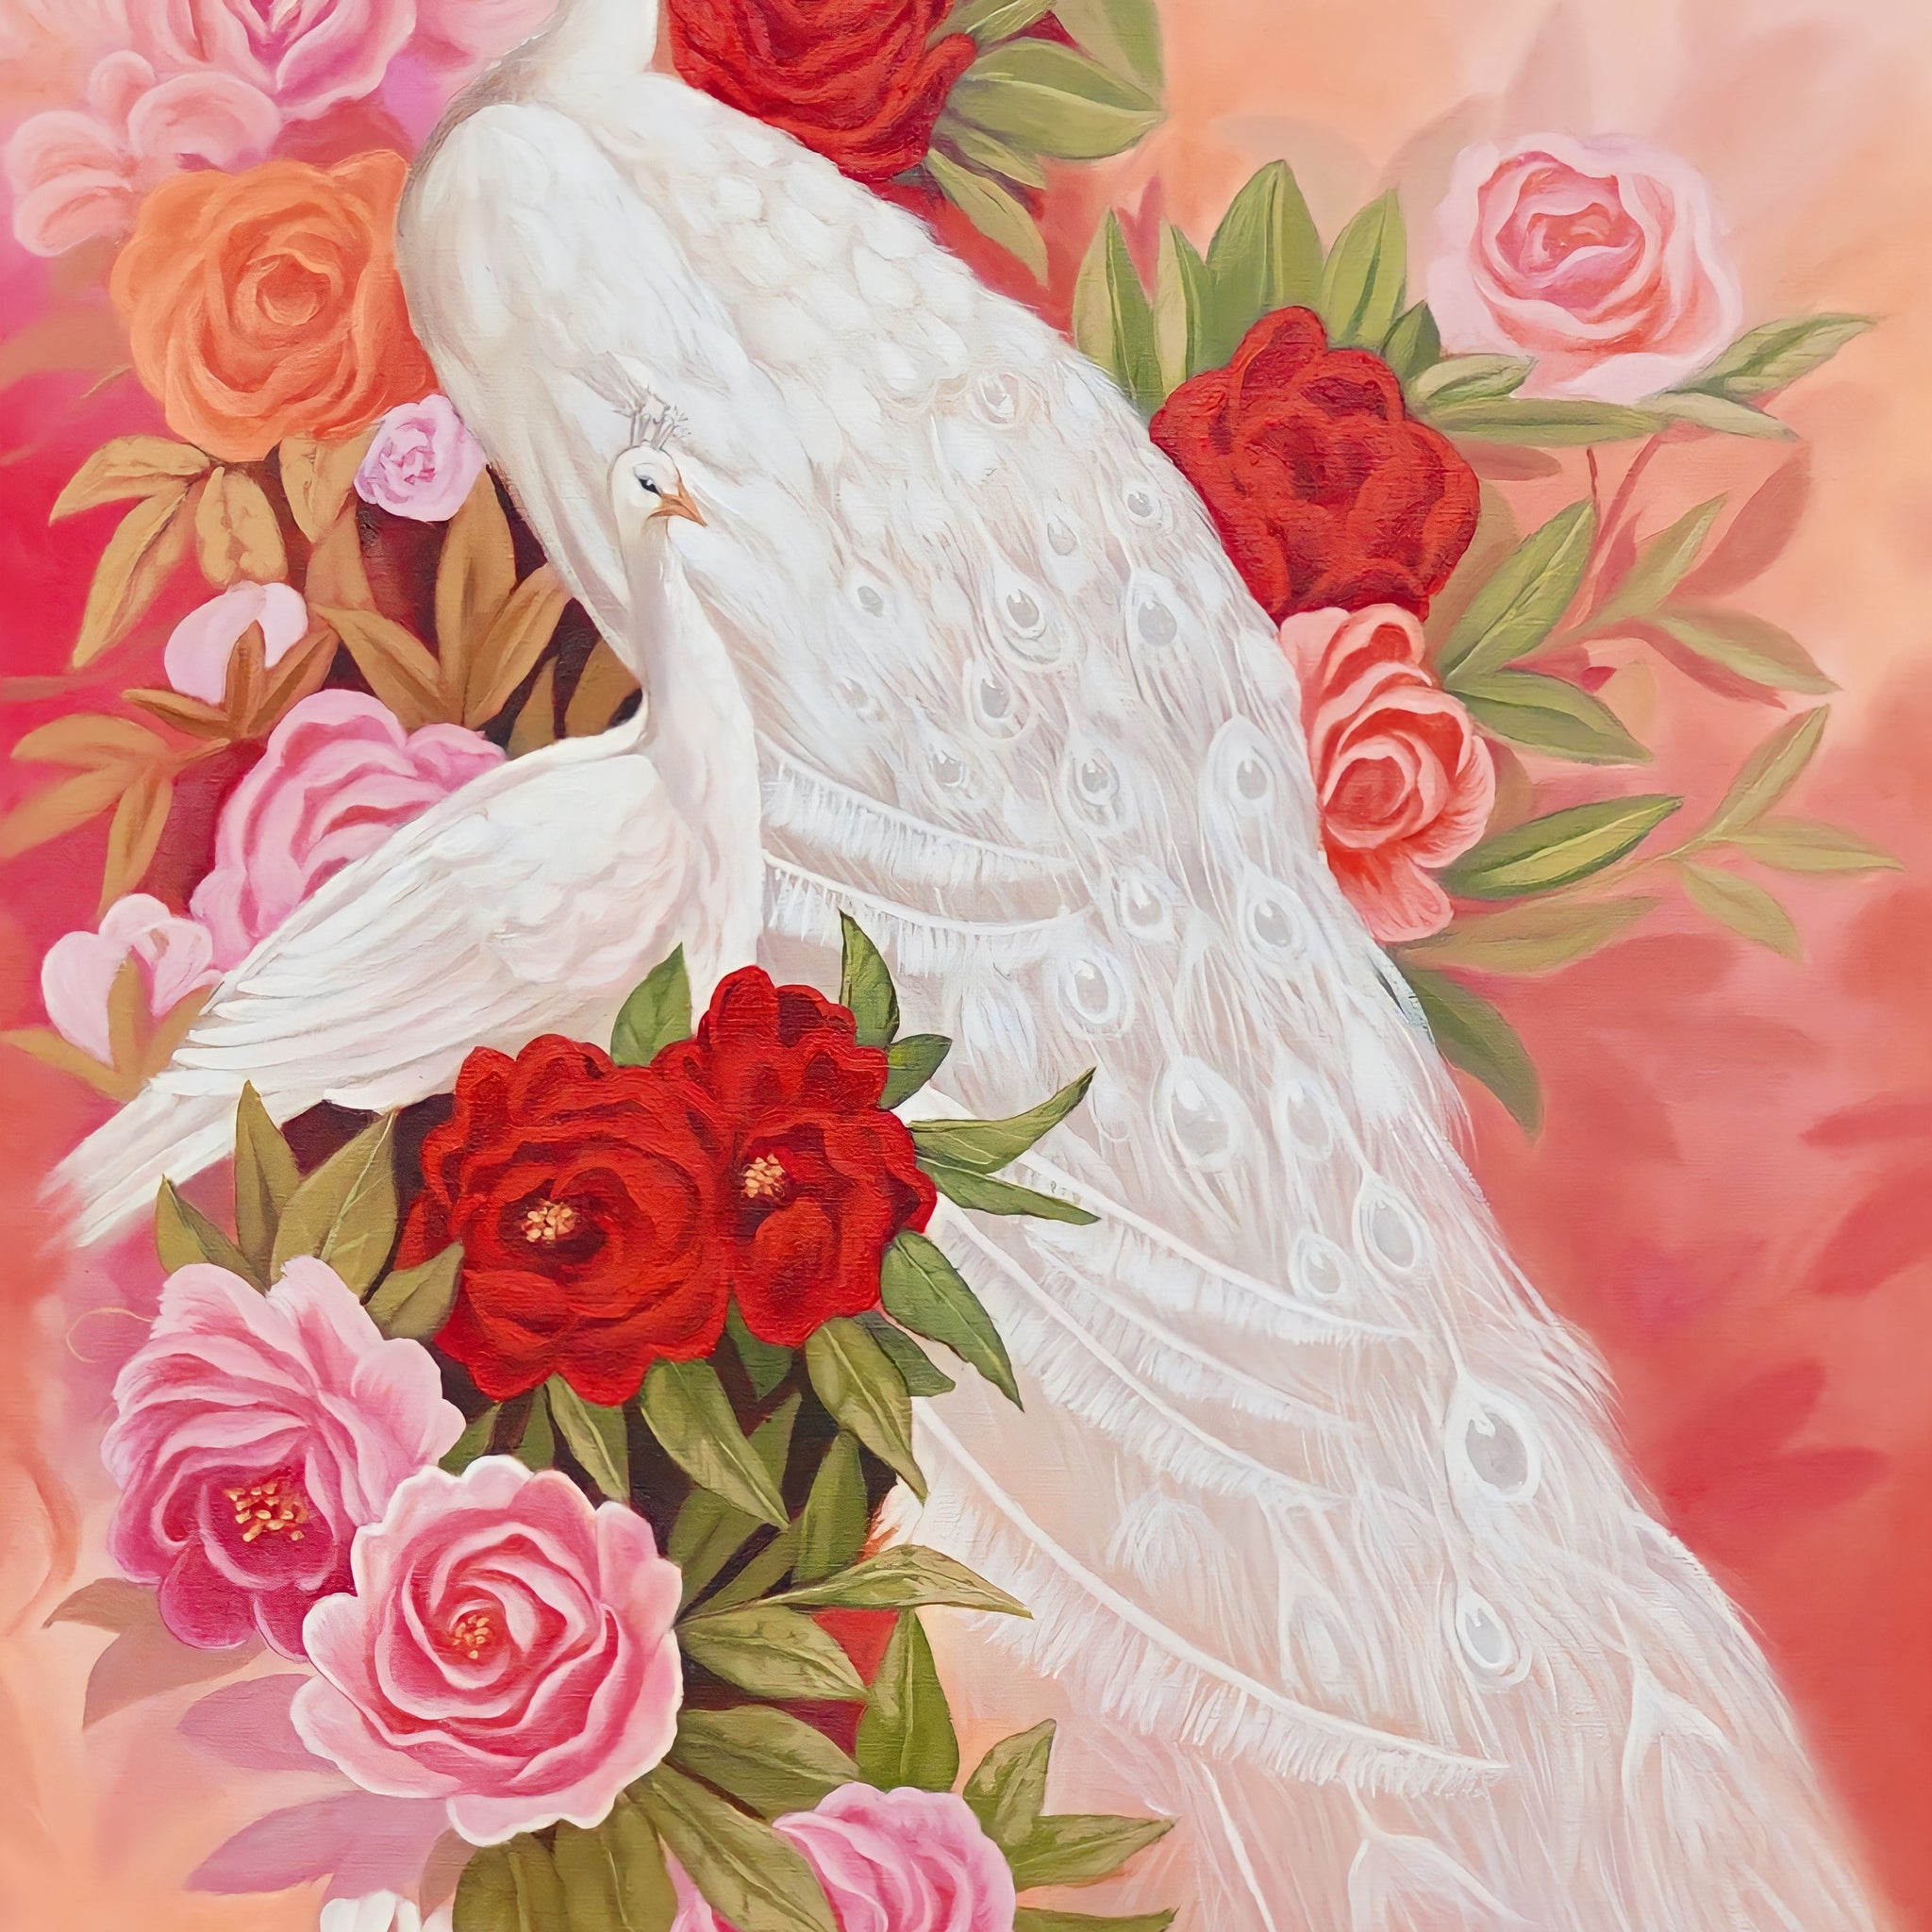 Amour et paon blanc - 60 x 90 cm